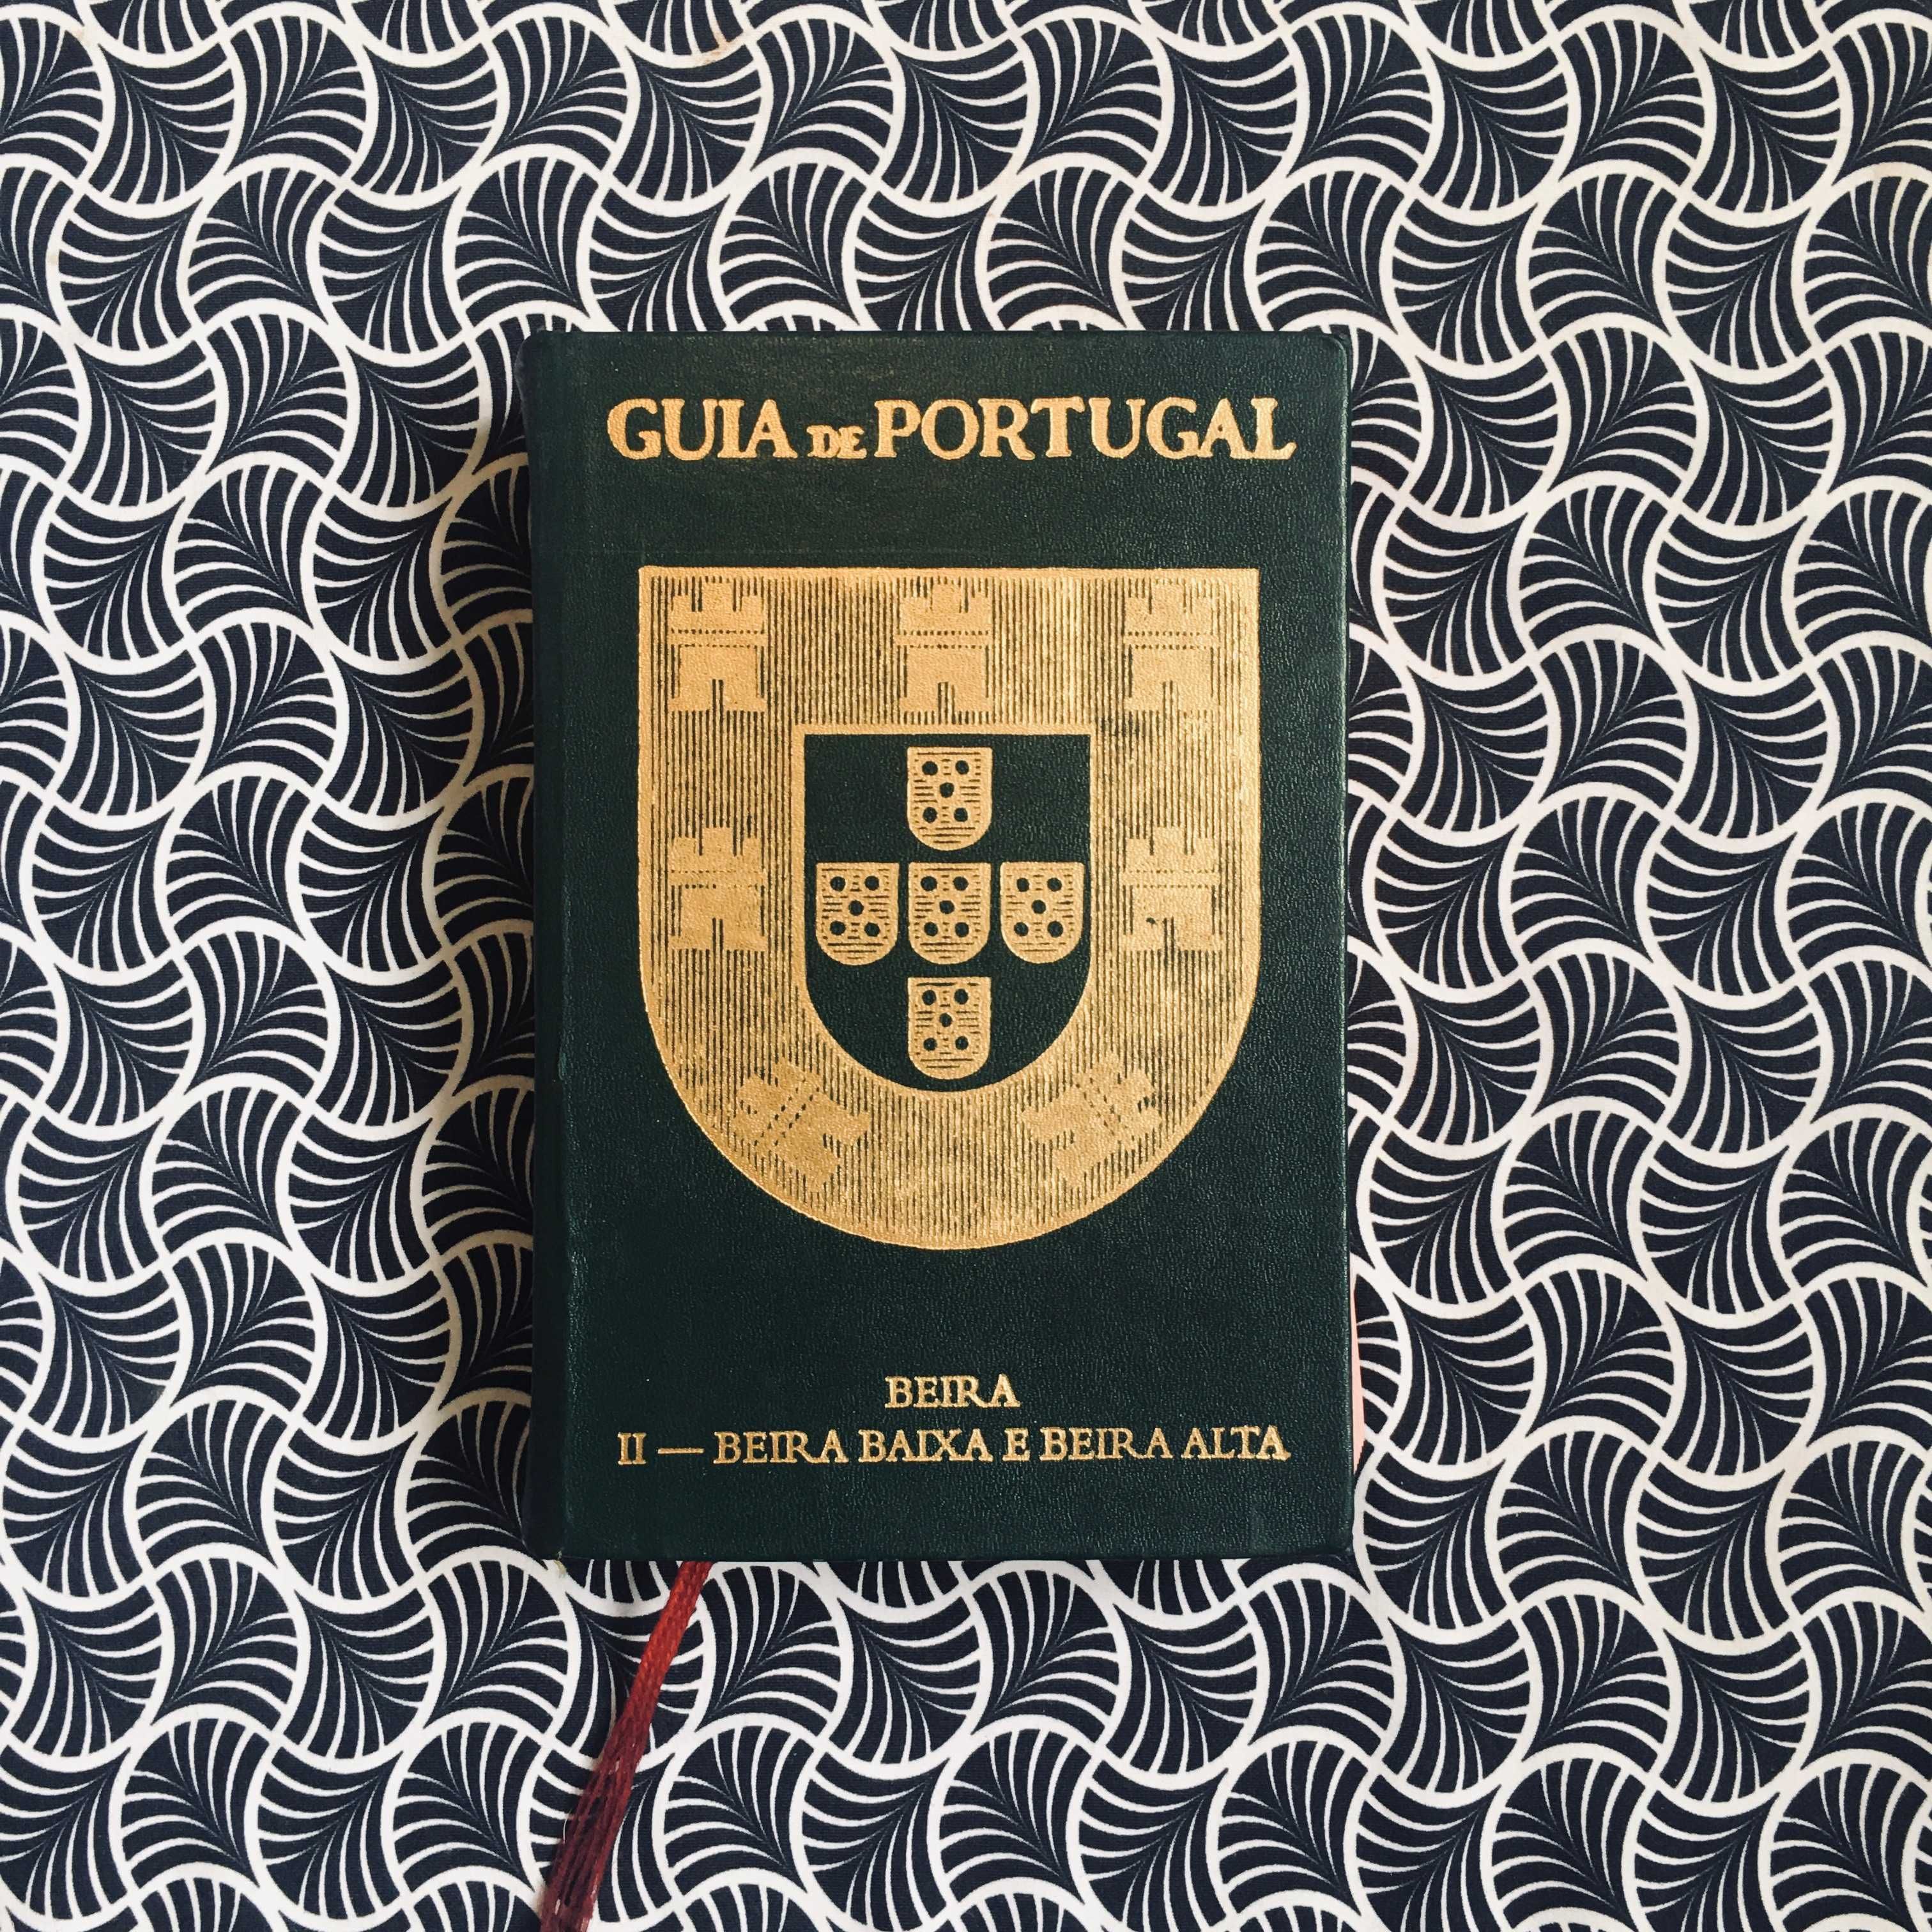 Guia de Portugal Beira Beira Litoral / Beira Baixa e Beira Alta)